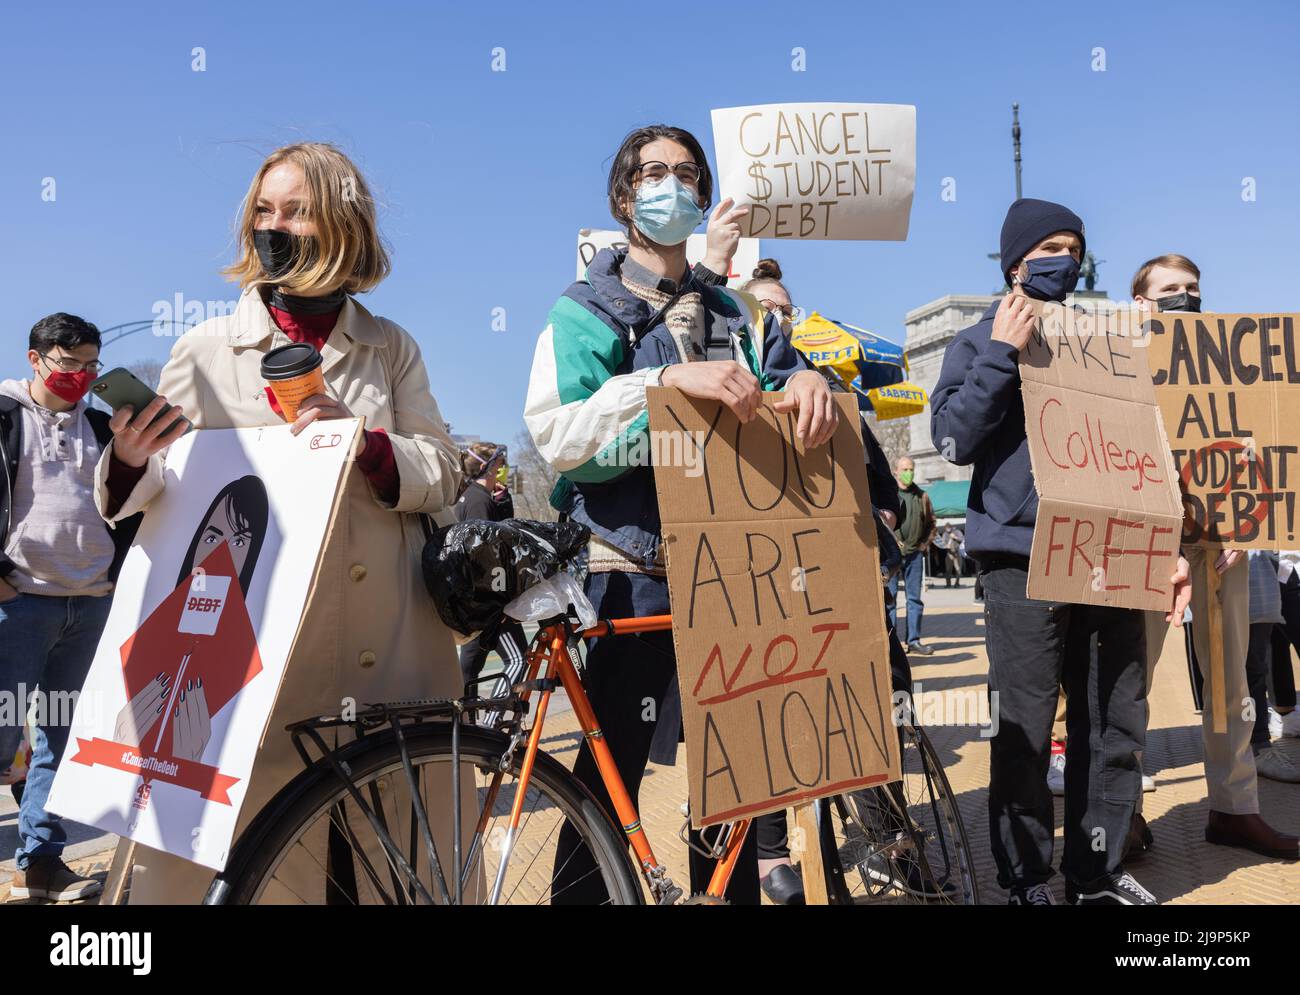 BROOKLYN, NY – 3. April 2021: Demonstranten protestieren in der Nähe des Grand Army Plaza während einer Kundgebung, um die Schulden von Studentendarlehen zu streichen. Stockfoto